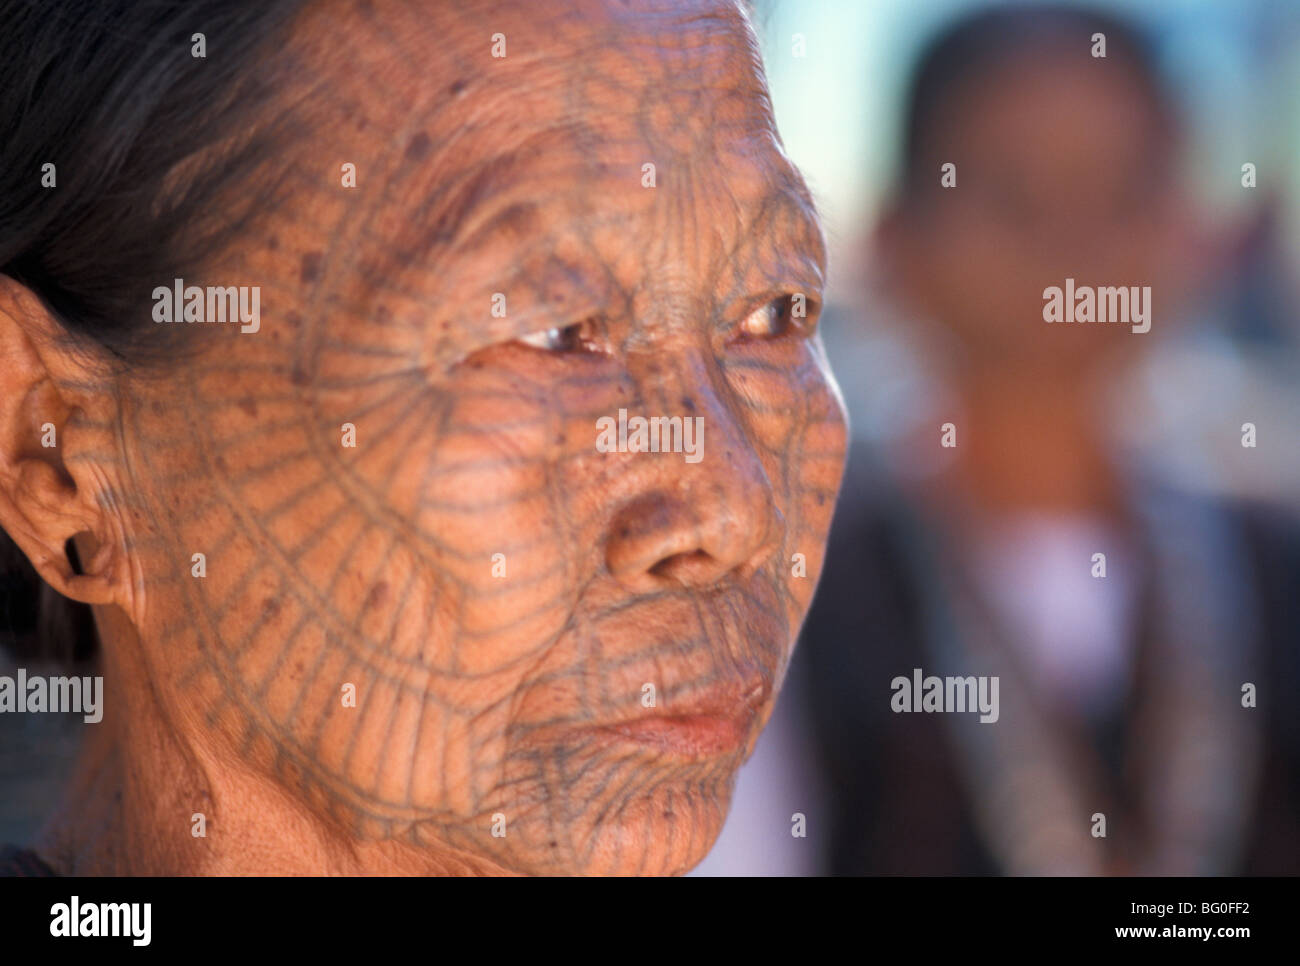 Menton femme avec dos tatouage, l'état Chin, le Myanmar (Birmanie), l'Asie Banque D'Images